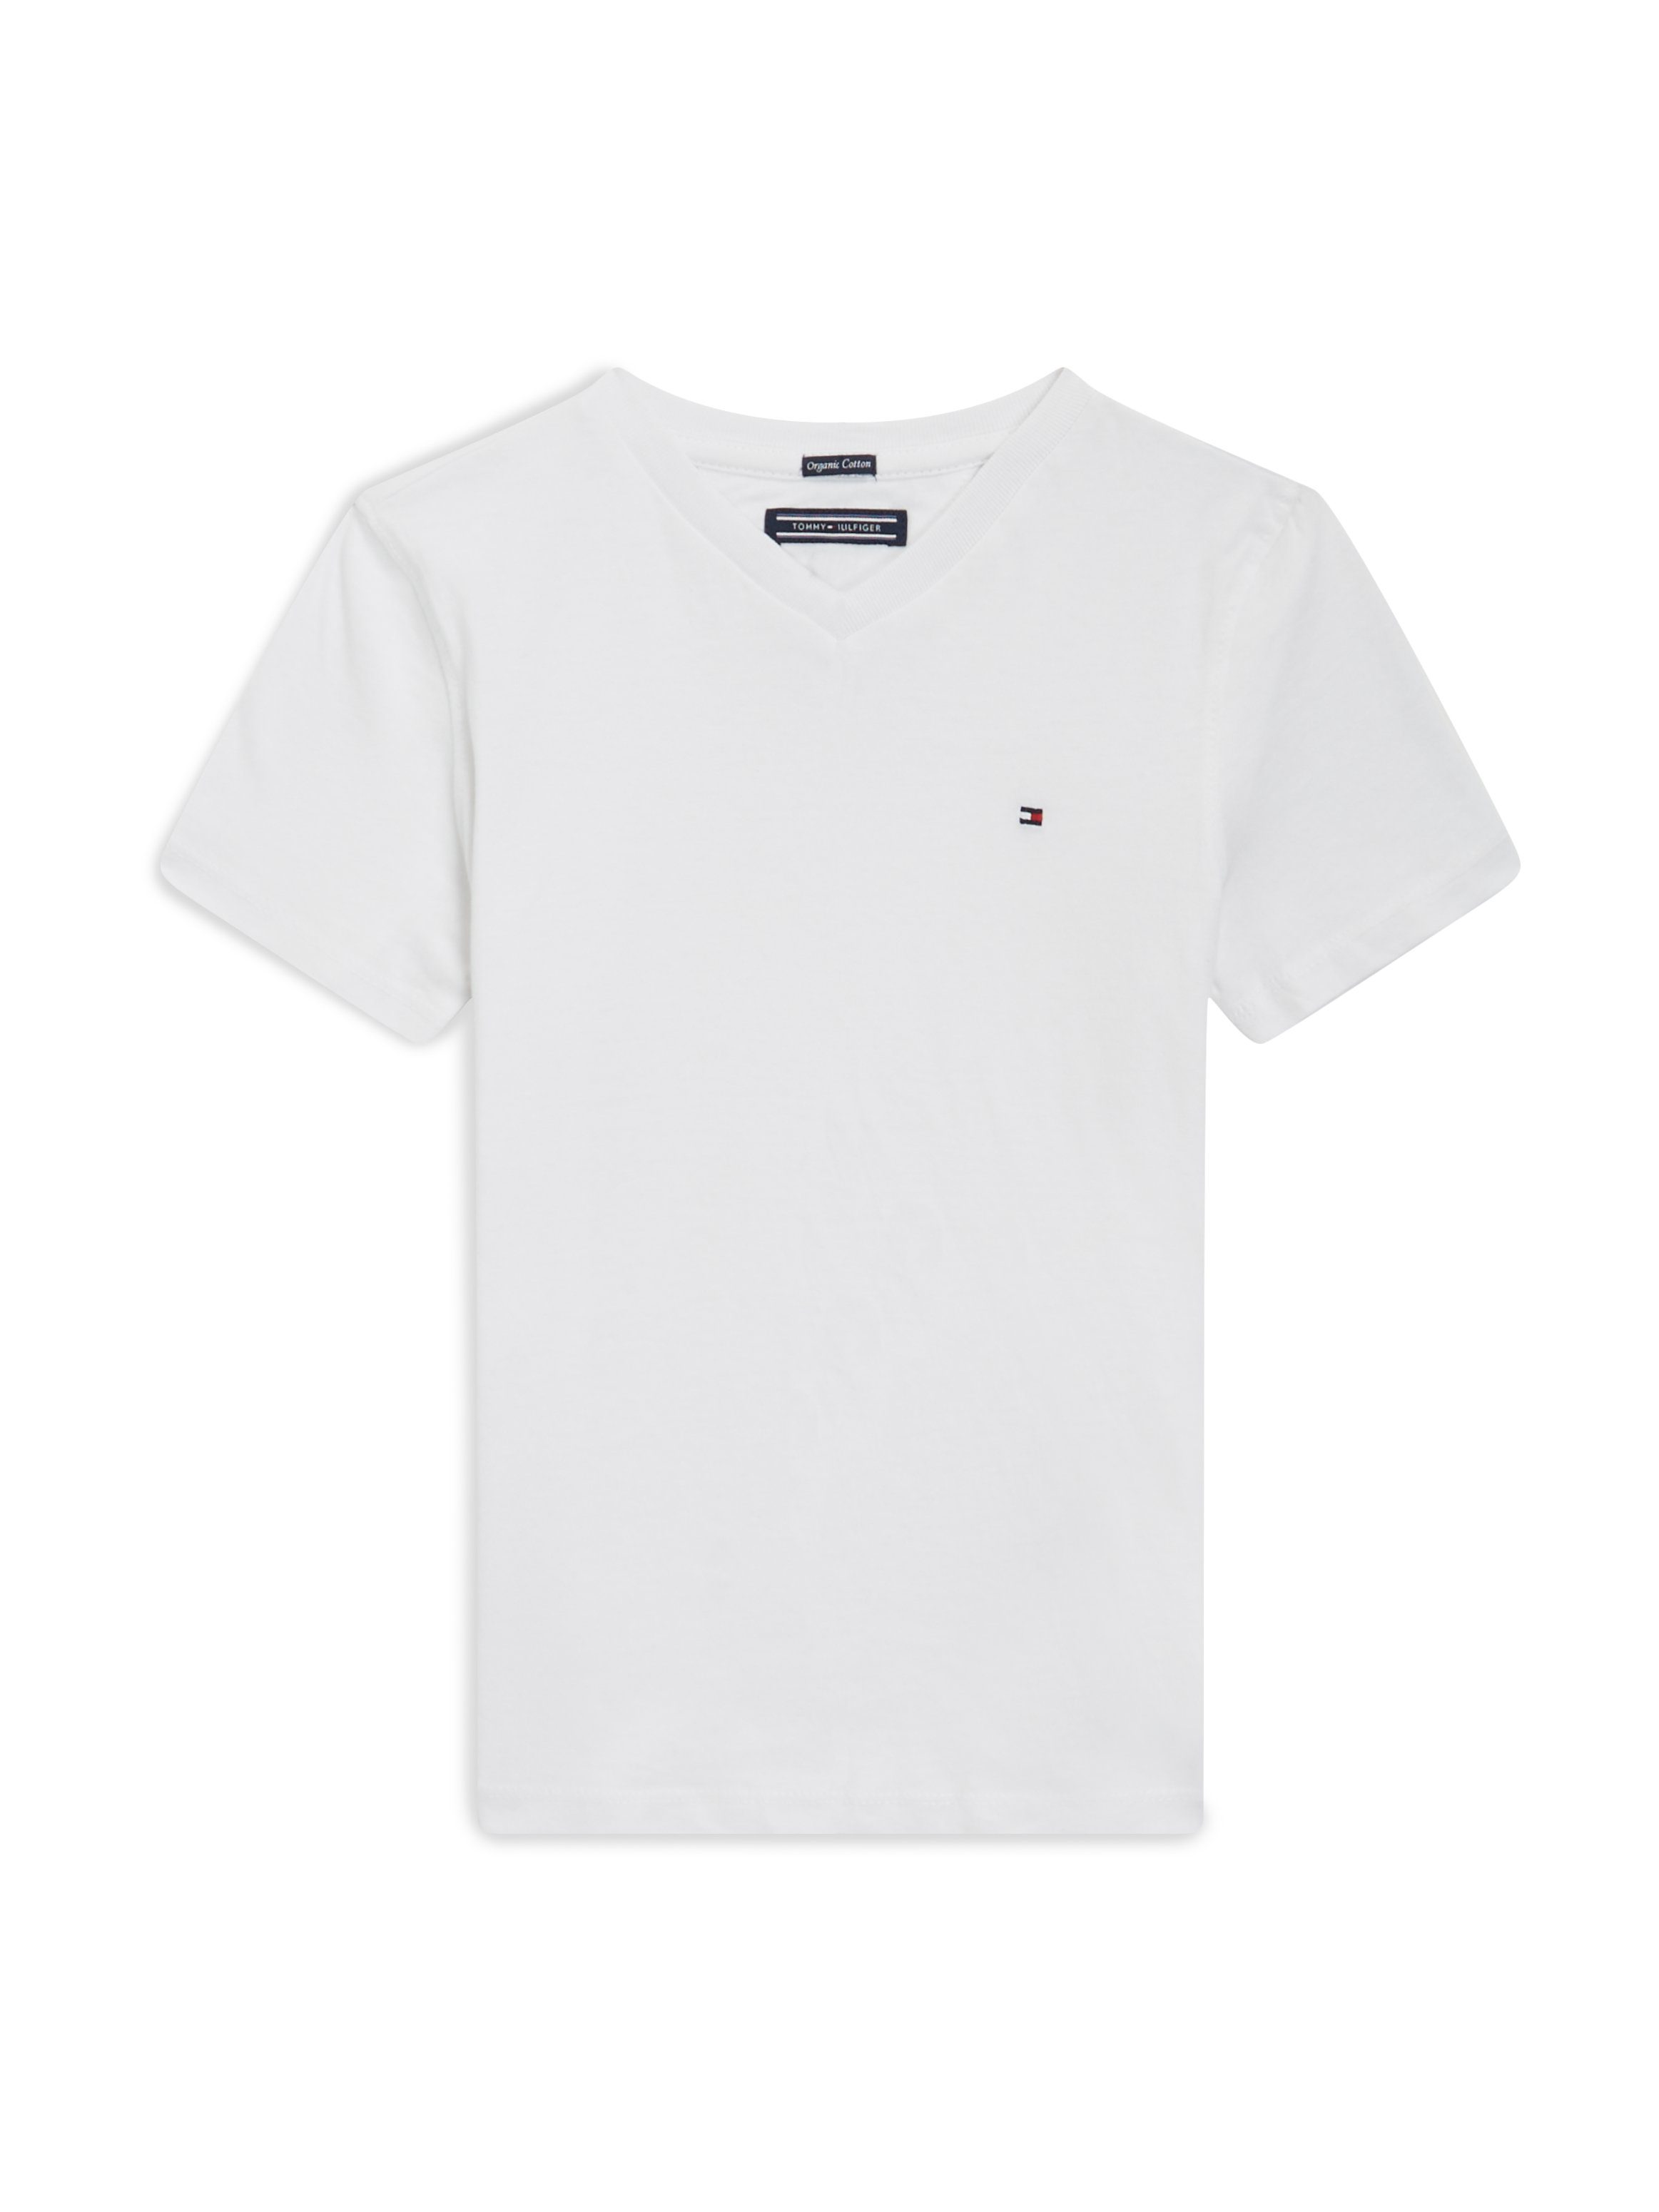 KNIT Tommy V-Shirt Bright_White S/S Hilfiger BASIC Tommy mit Logo-Flag VN Hilfiger BOYS